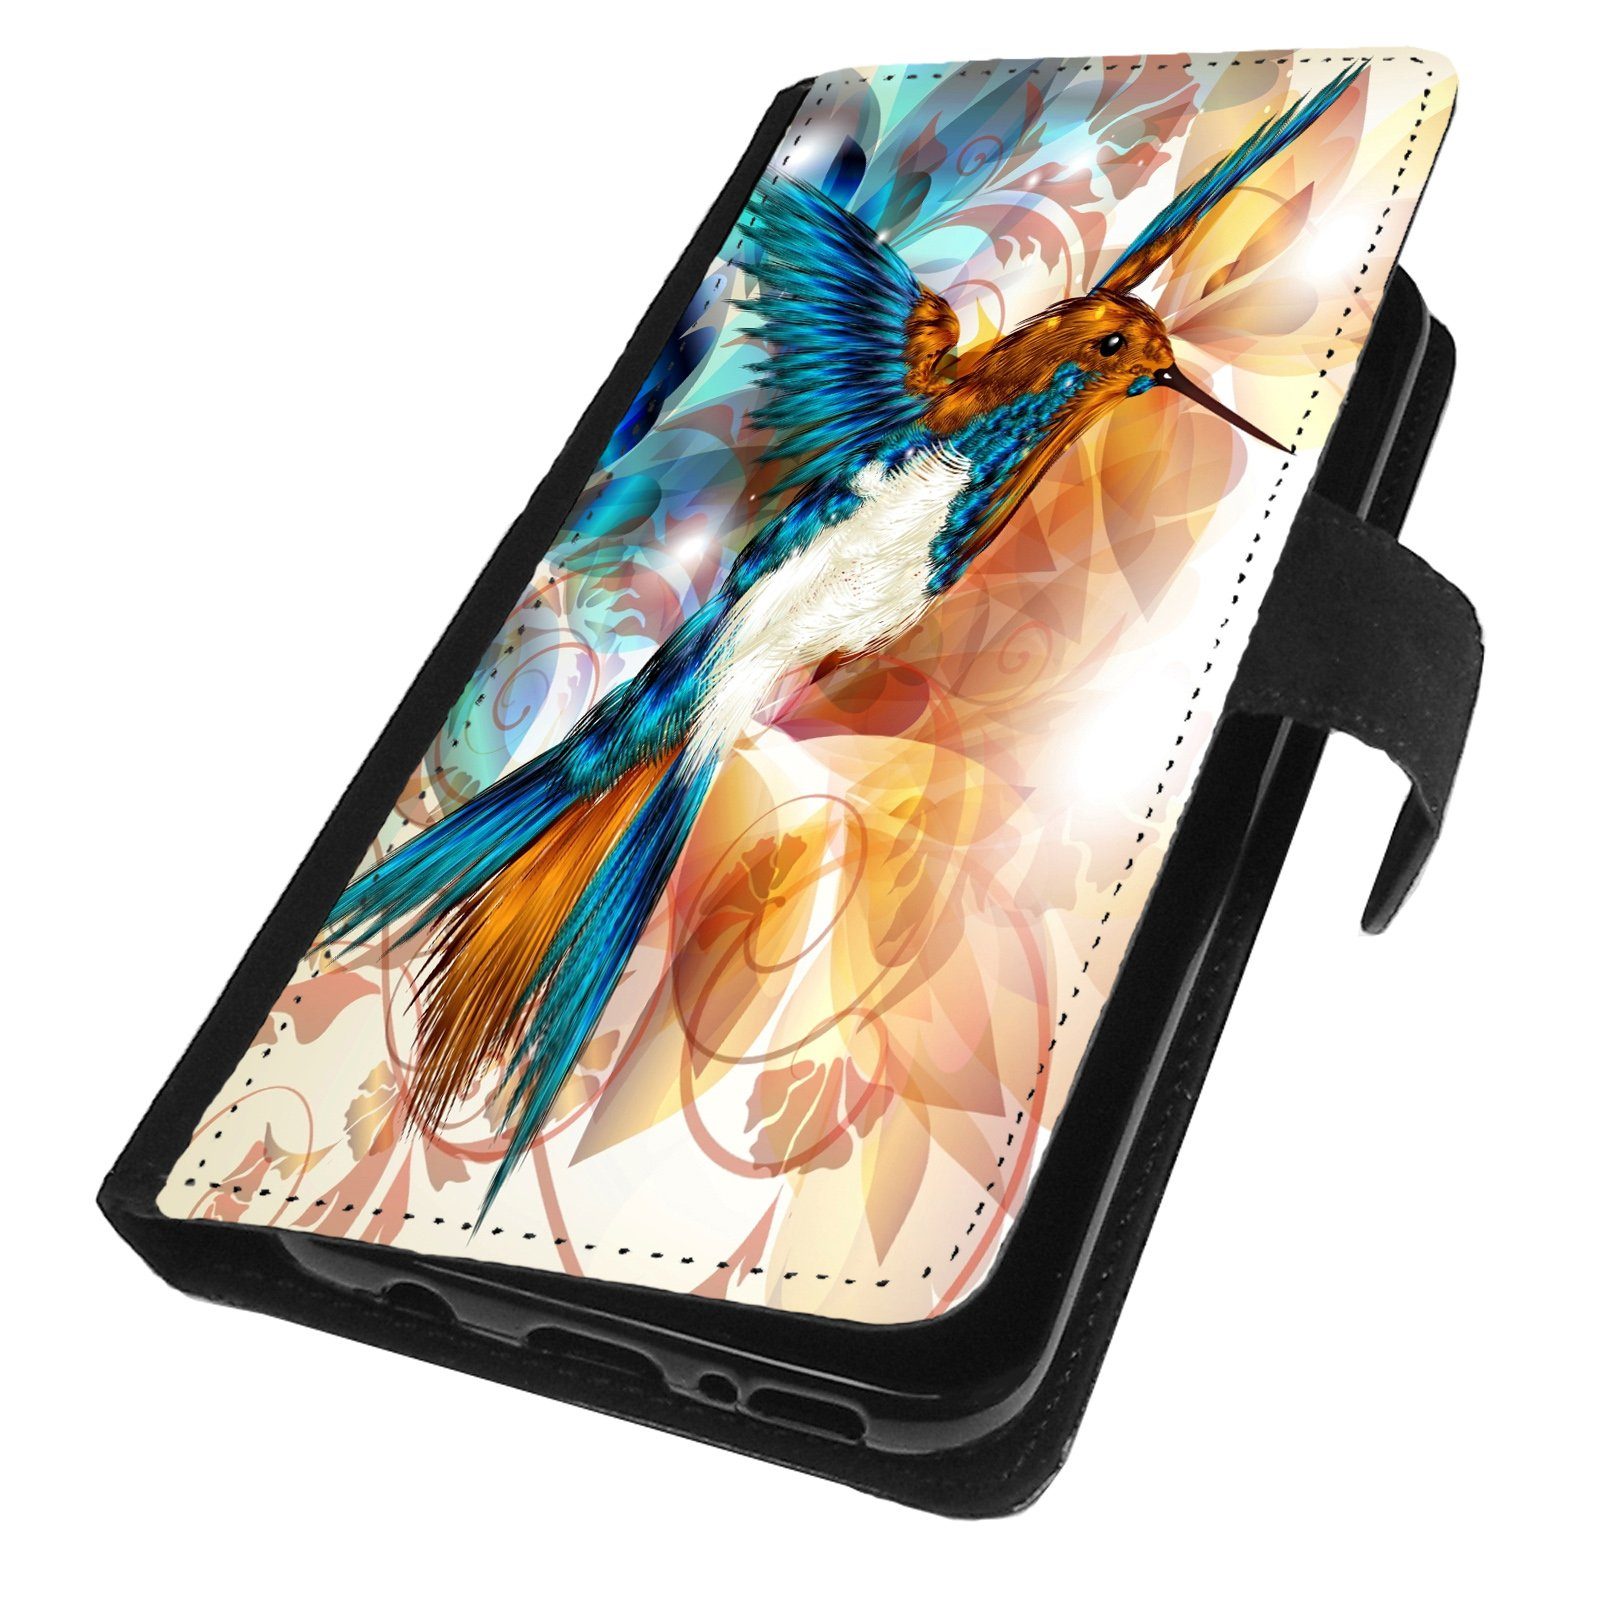 Traumhuelle Handyhülle Für Samsung Galaxy S20 Plus 5G / S20 Ultra 5G Hülle  Motiv 12, Book Handy Schutzhülle Klapp Hülle Flip Case Etui Cover